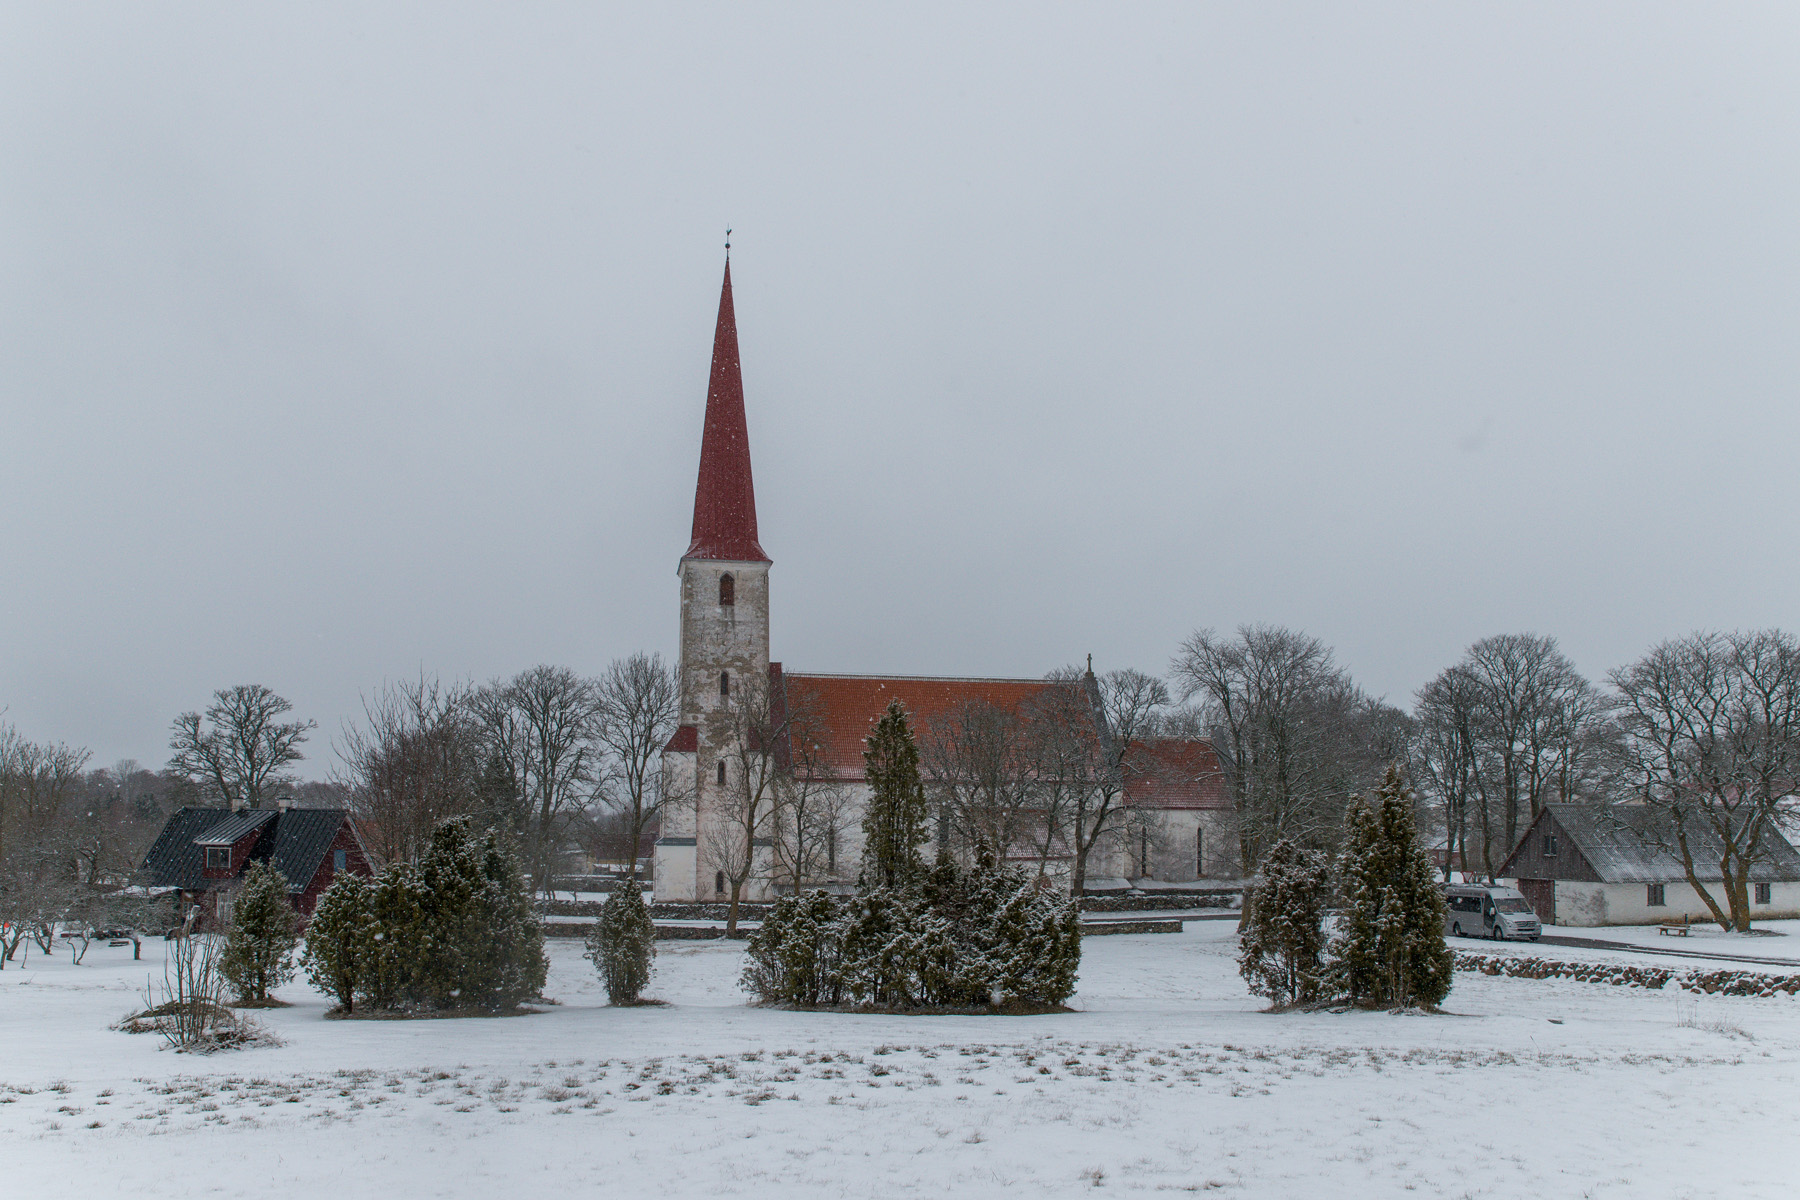 20160319-Saaremaa-475-Kihelkonna-kirik.jpg - 18.-20. märts 2016. Saaremaa ringreis. Kihelkonna kirik